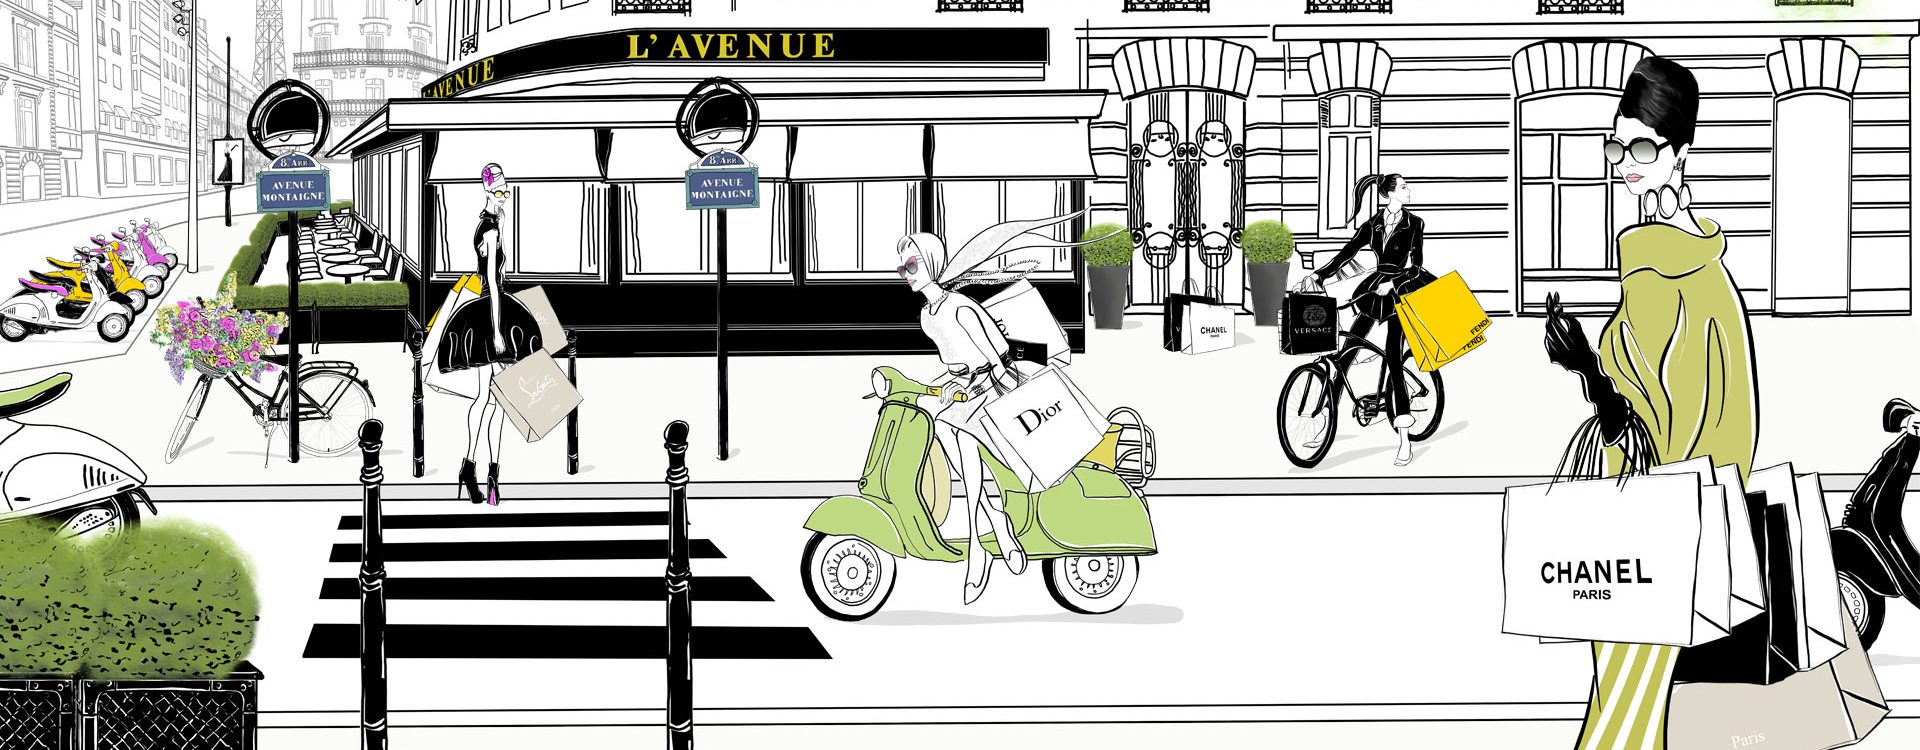 L Avenue Fashion Illustration Scene